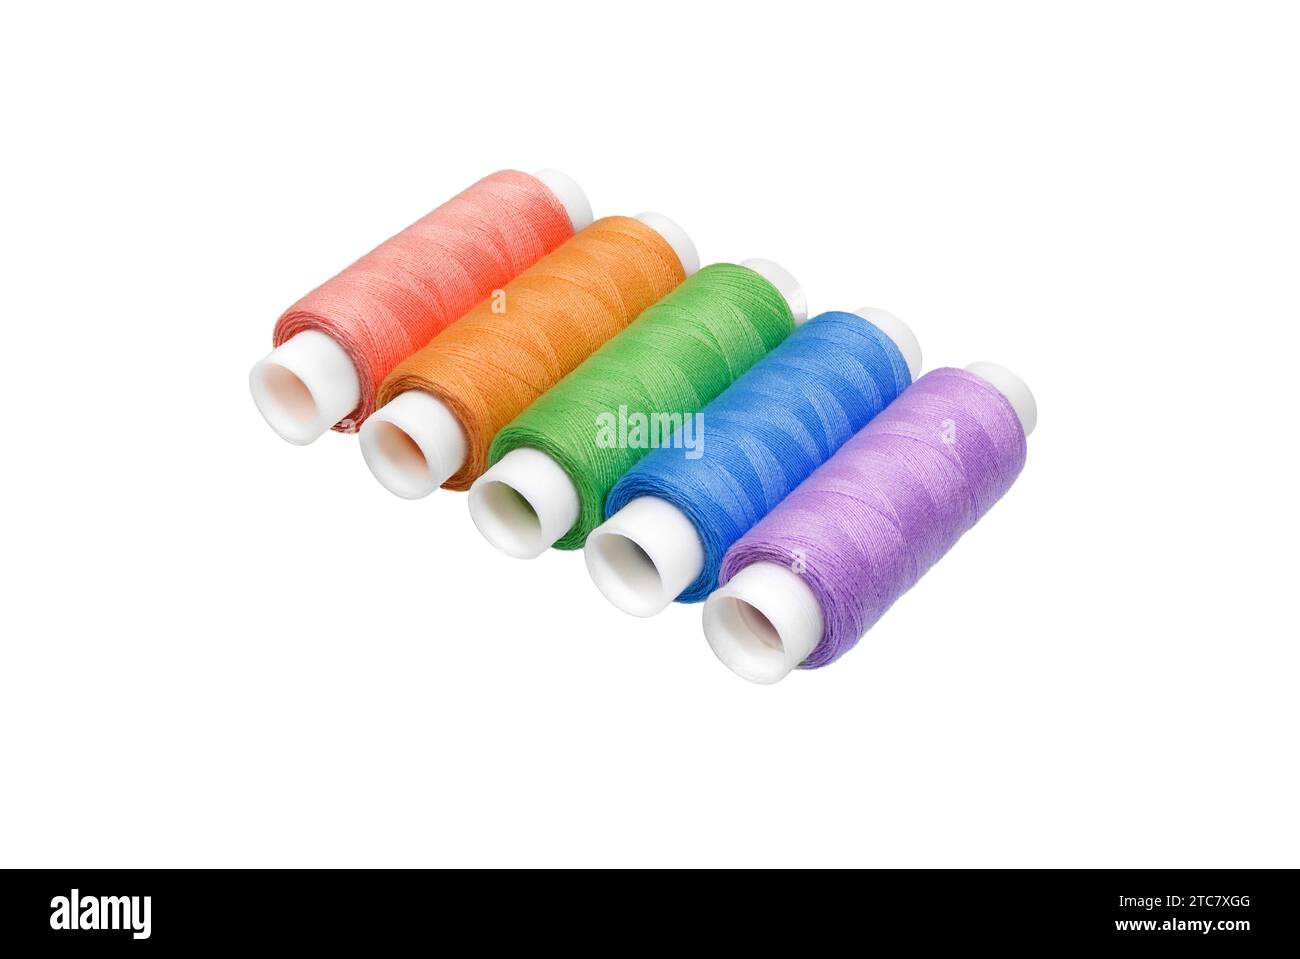 Bobina di filettatura isolata su sfondo bianco. Set di diversi fili colorati per cucire, vista dall'alto Foto Stock